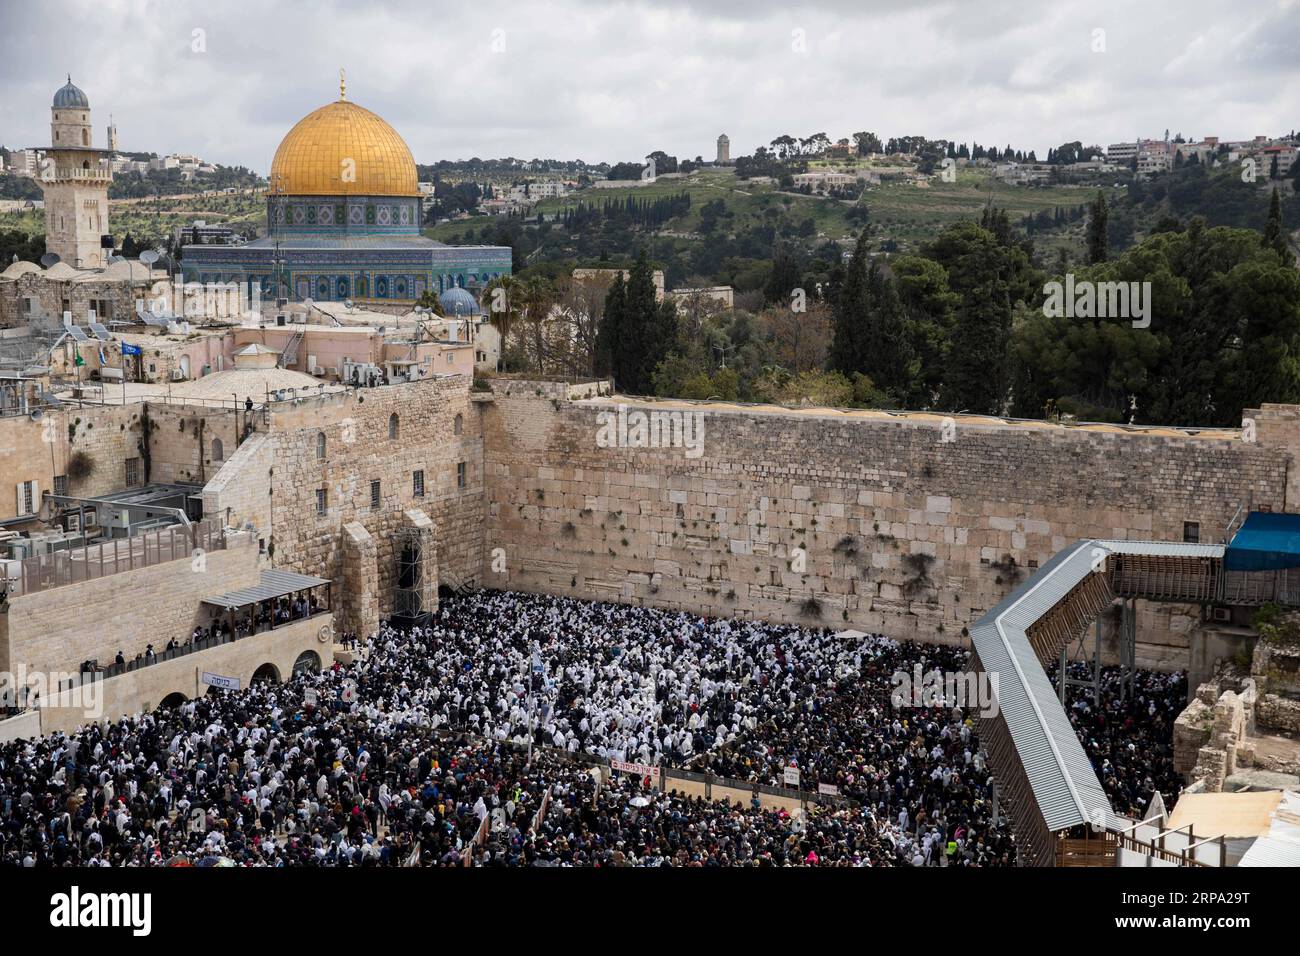 190422 -- GERUSALEMME, 22 aprile 2019 -- i fedeli ebrei prendono parte a una benedizione sacerdotale durante la festa ebraica di Pesach presso il muro Occidentale nella città Vecchia di Gerusalemme, il 22 aprile 2019. Migliaia di ebrei compiono il pellegrinaggio a Gerusalemme durante la festa di Pasqua di otto giorni, che commemora l'esodo degli Israeliti dalla schiavitù in Egitto circa 3.500 anni fa. FESTA MIDEAST-GERUSALEMME-PASQUA JINI PUBLICATIONXNOTXINXCHN Foto Stock